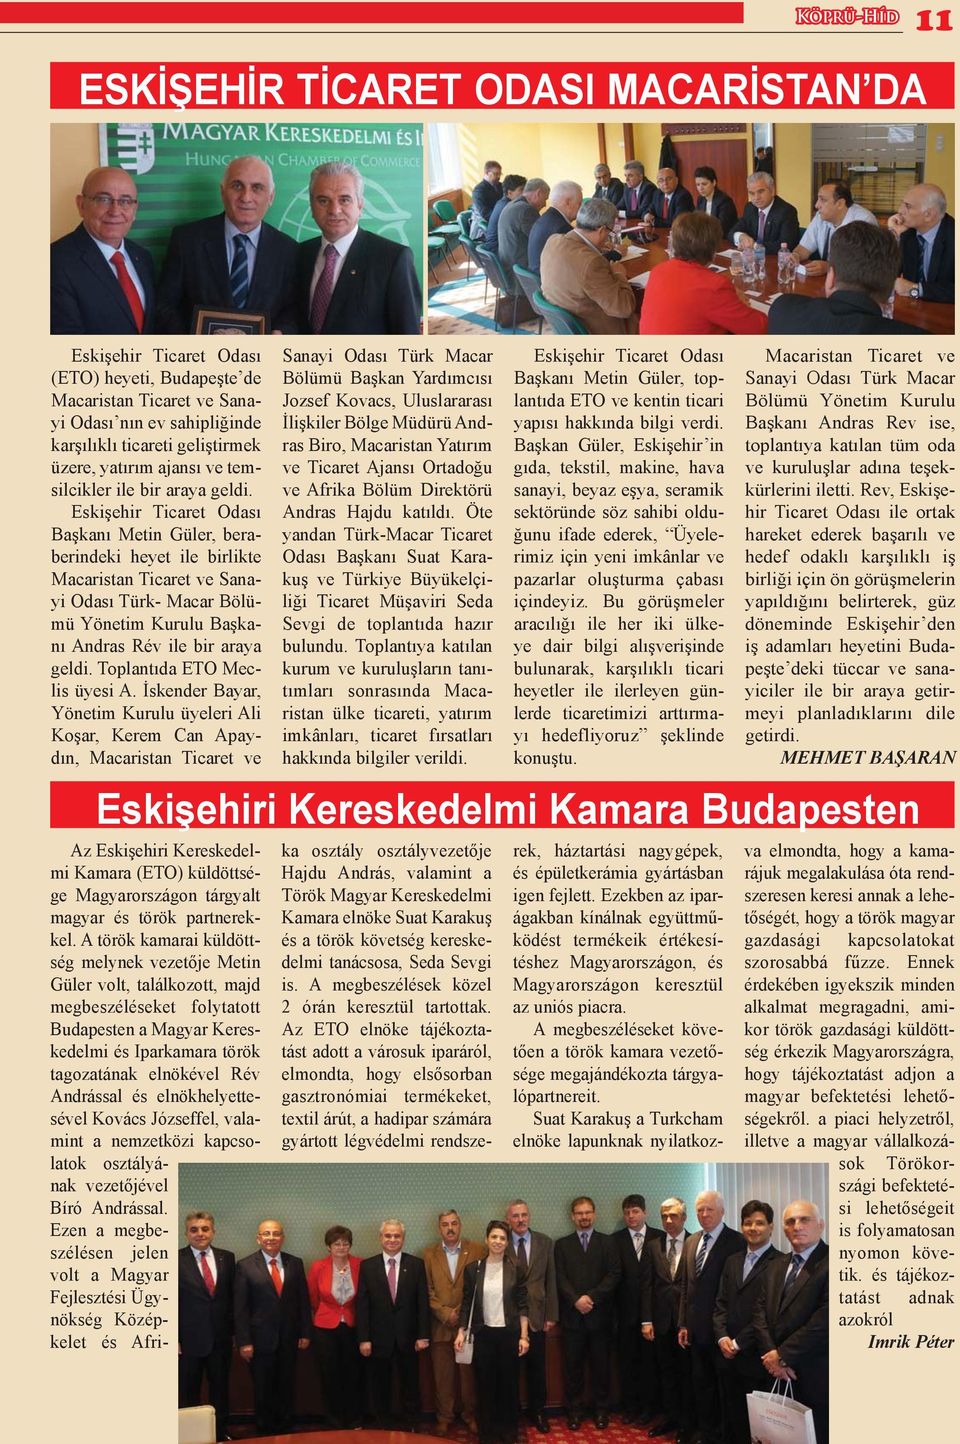 Eskişehir Ticaret Odası Başkanı Metin Güler, beraberindeki heyet ile birlikte Macaristan Ticaret ve Sanayi Odası Türk- Macar Bölümü Yönetim Kurulu Başkanı Andras Rév ile bir araya geldi.